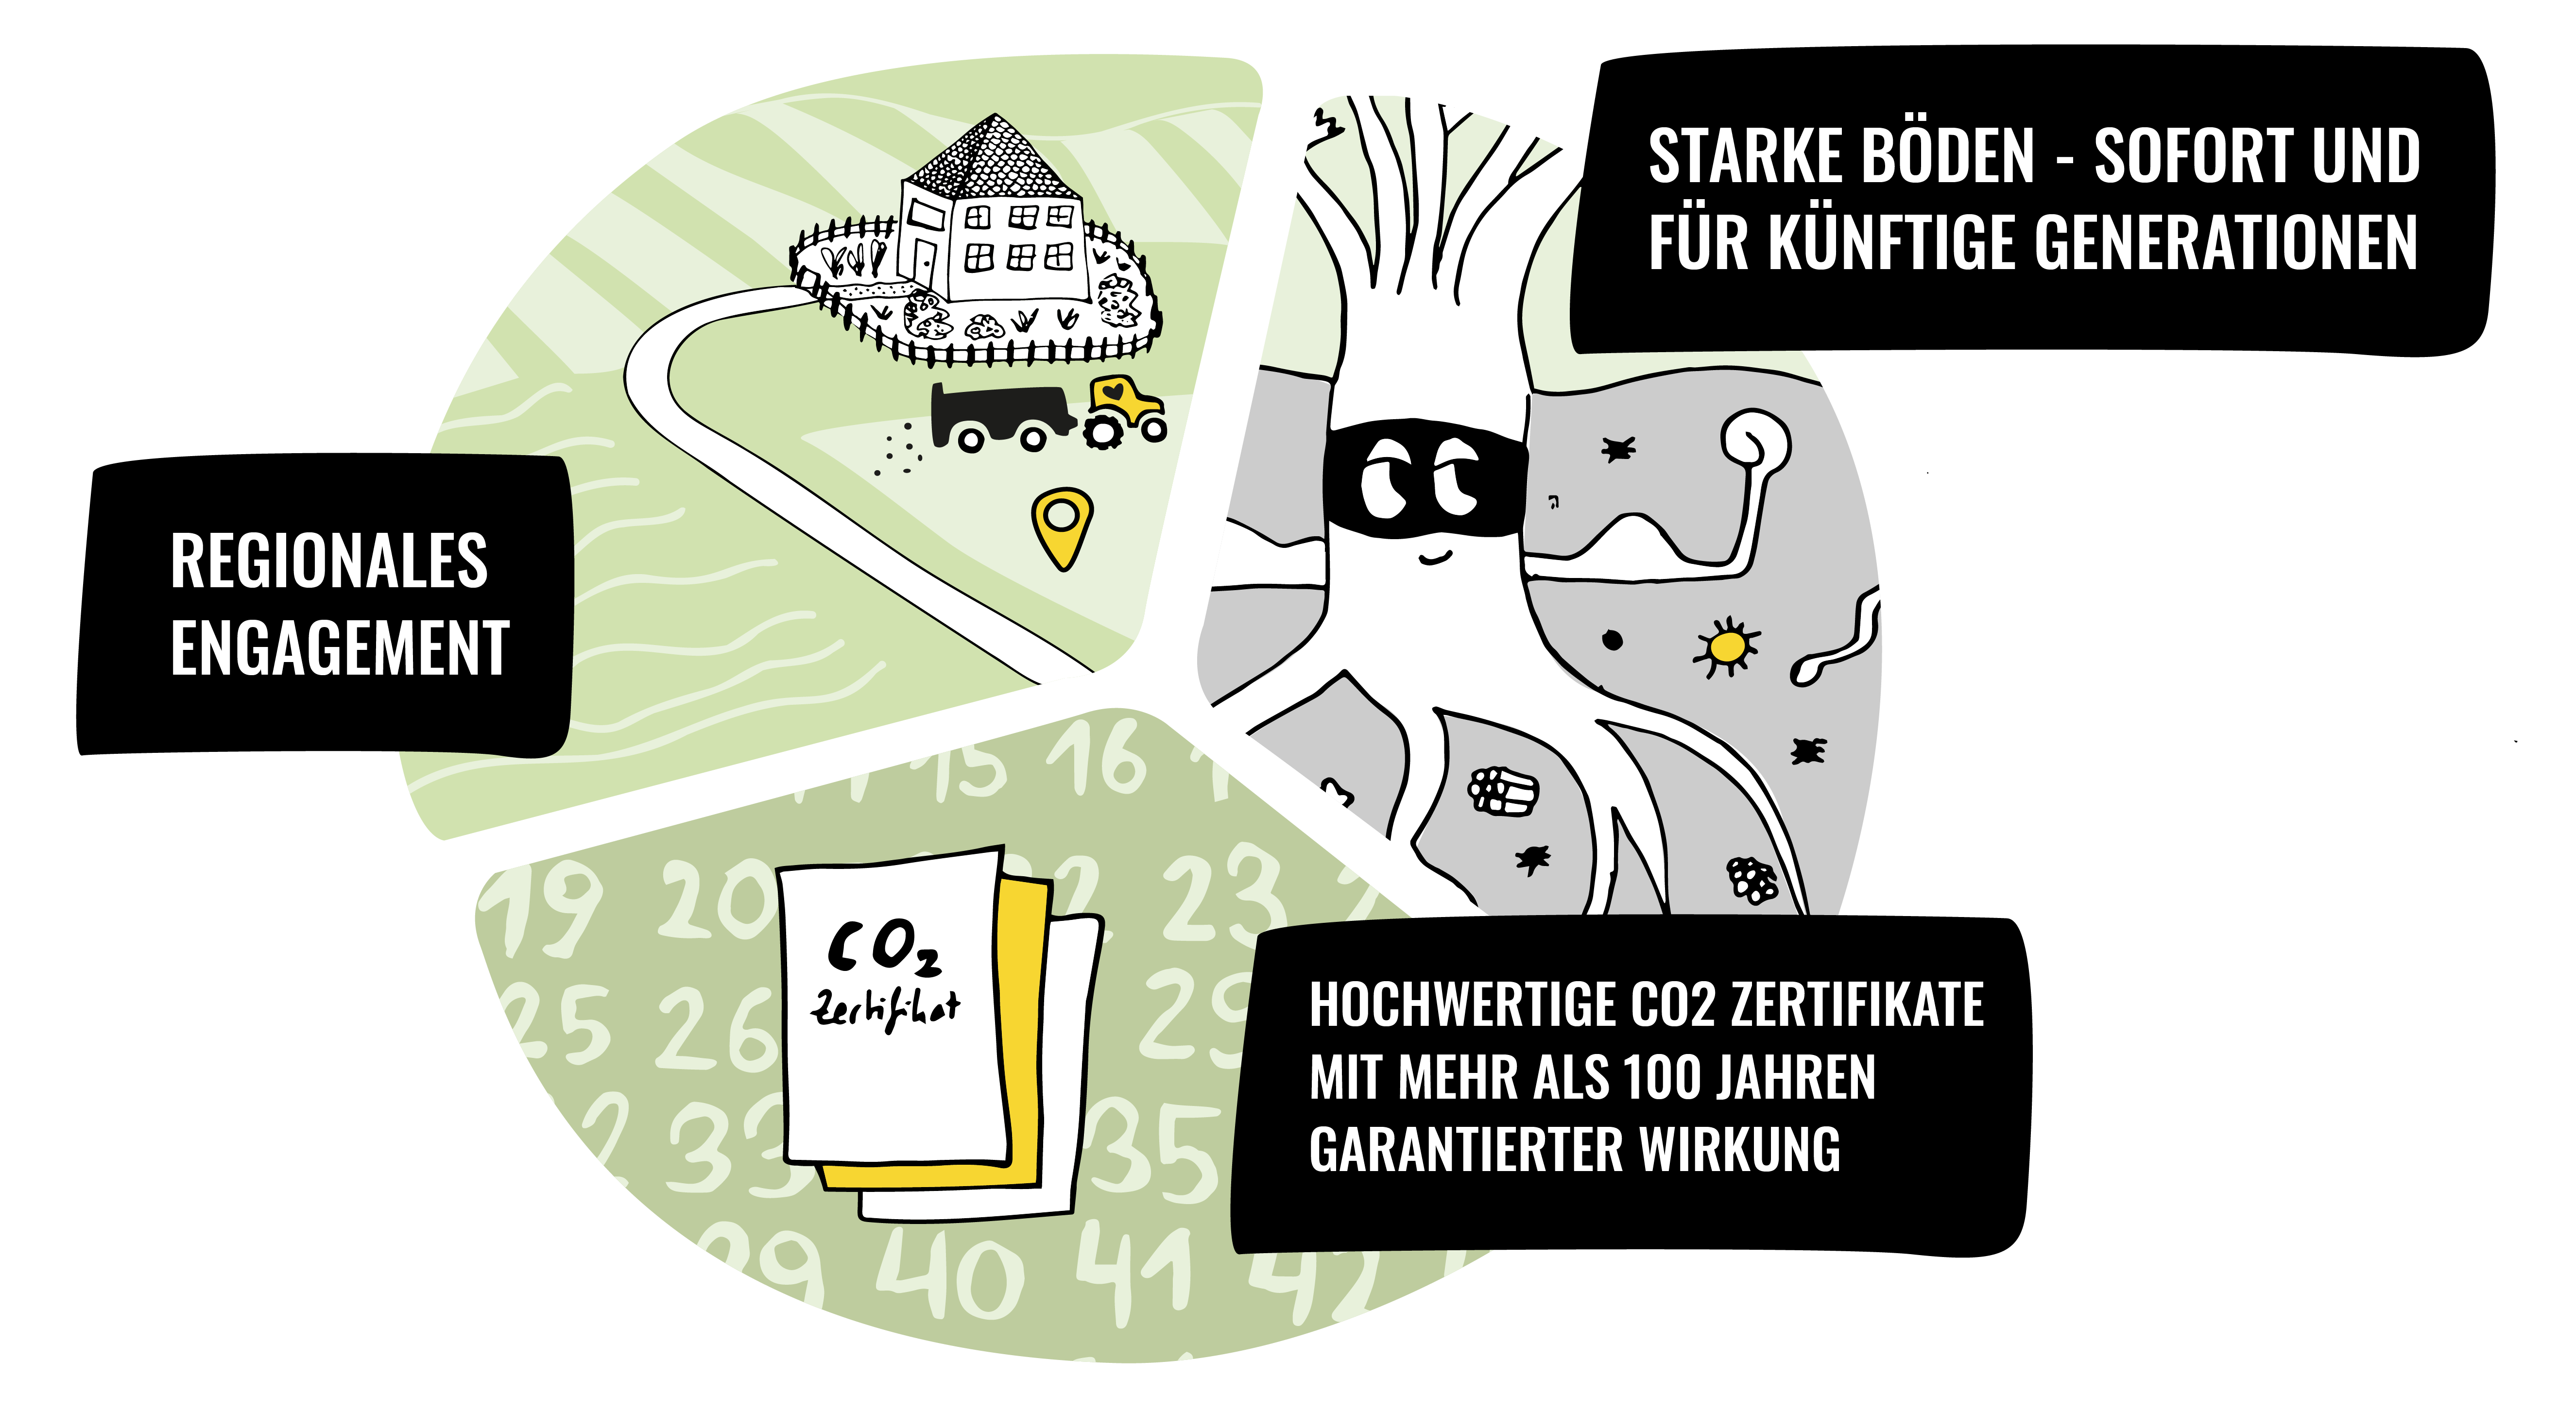 Tortendiagramm mit den Leistungen der Kohlekumpels: Regionales Engagement, Starke Böden - sofort und für künftige Generationen sowie Hochwertige CO₂ Zertifikate mit mehr als 100 Jahren garantierter Wirkung.